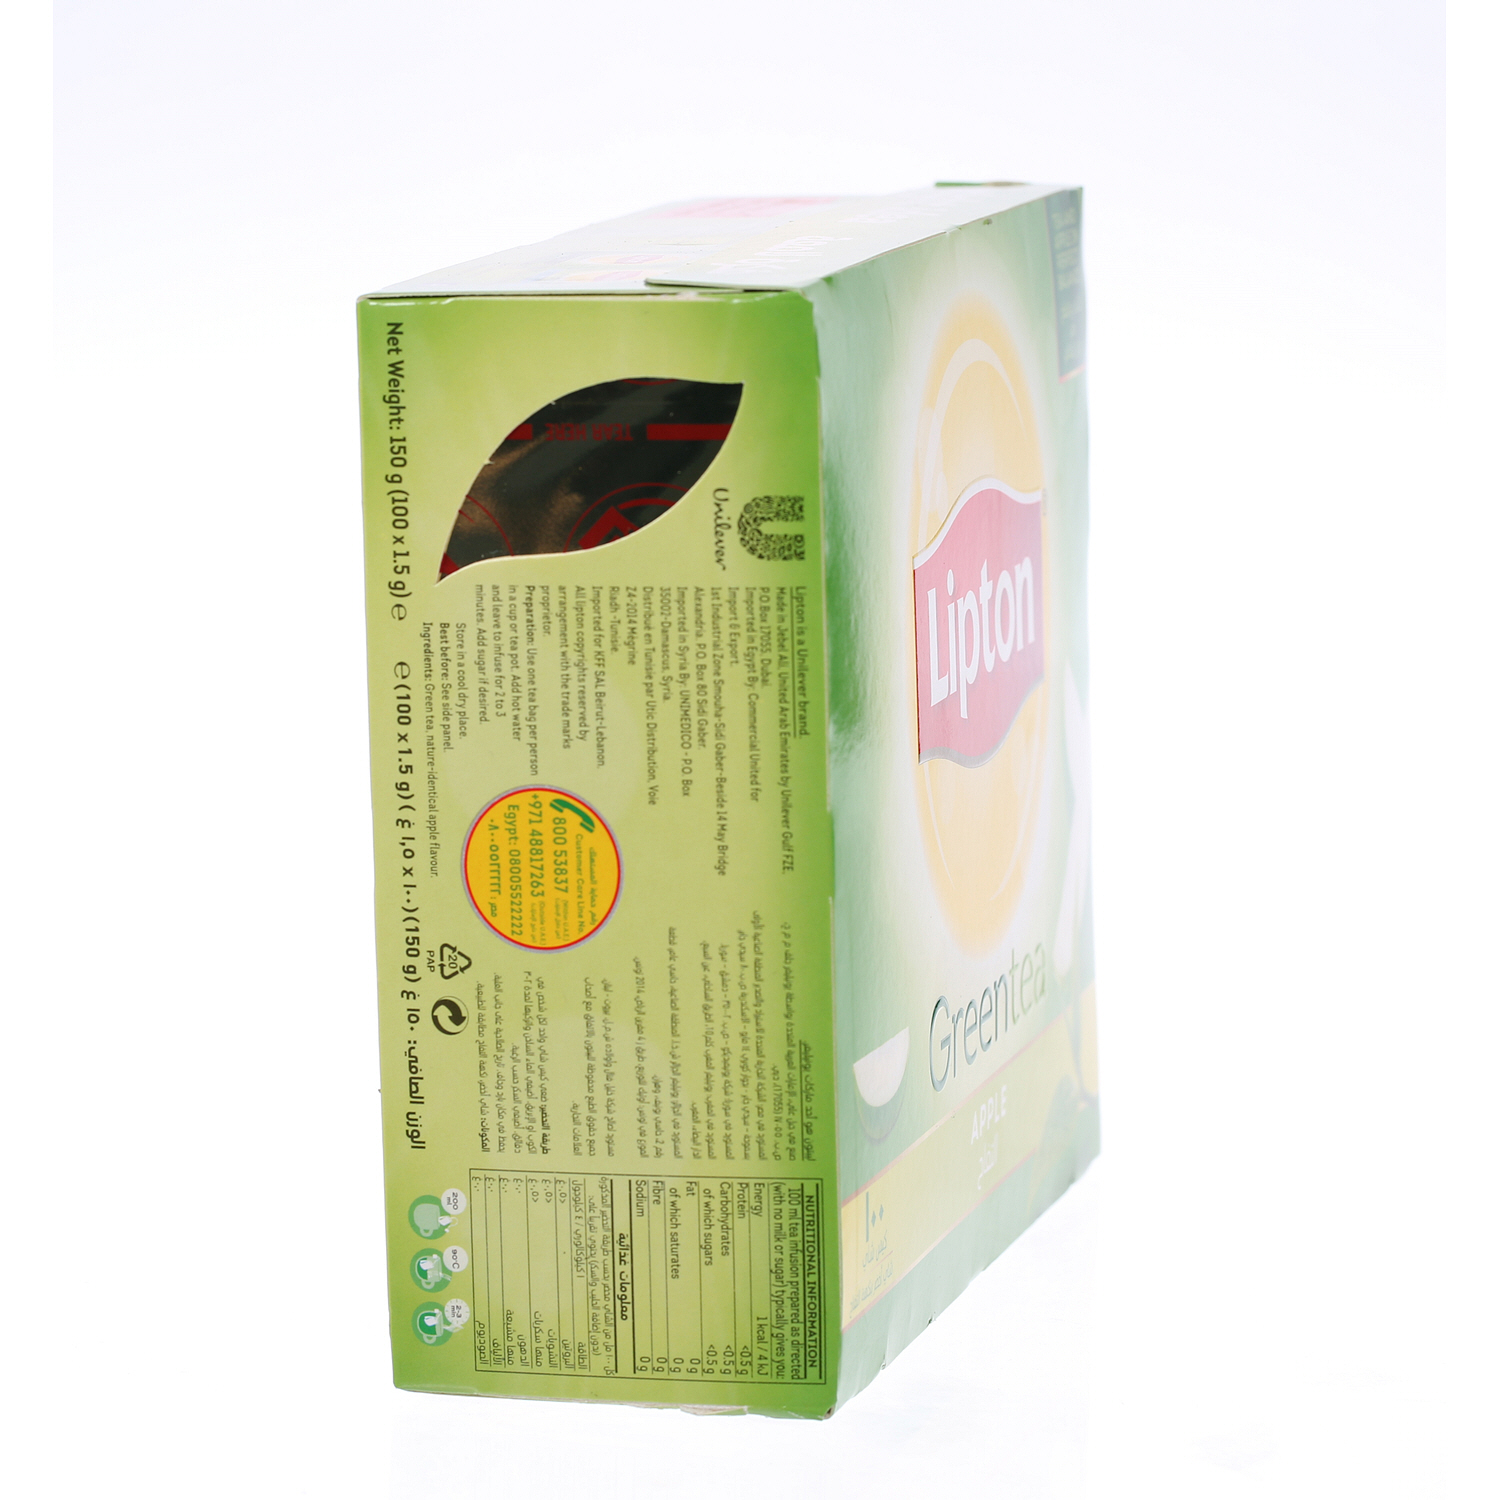 ليبتون اكياس شاي أخضر بالتفاح 100 × 1.5 جرام